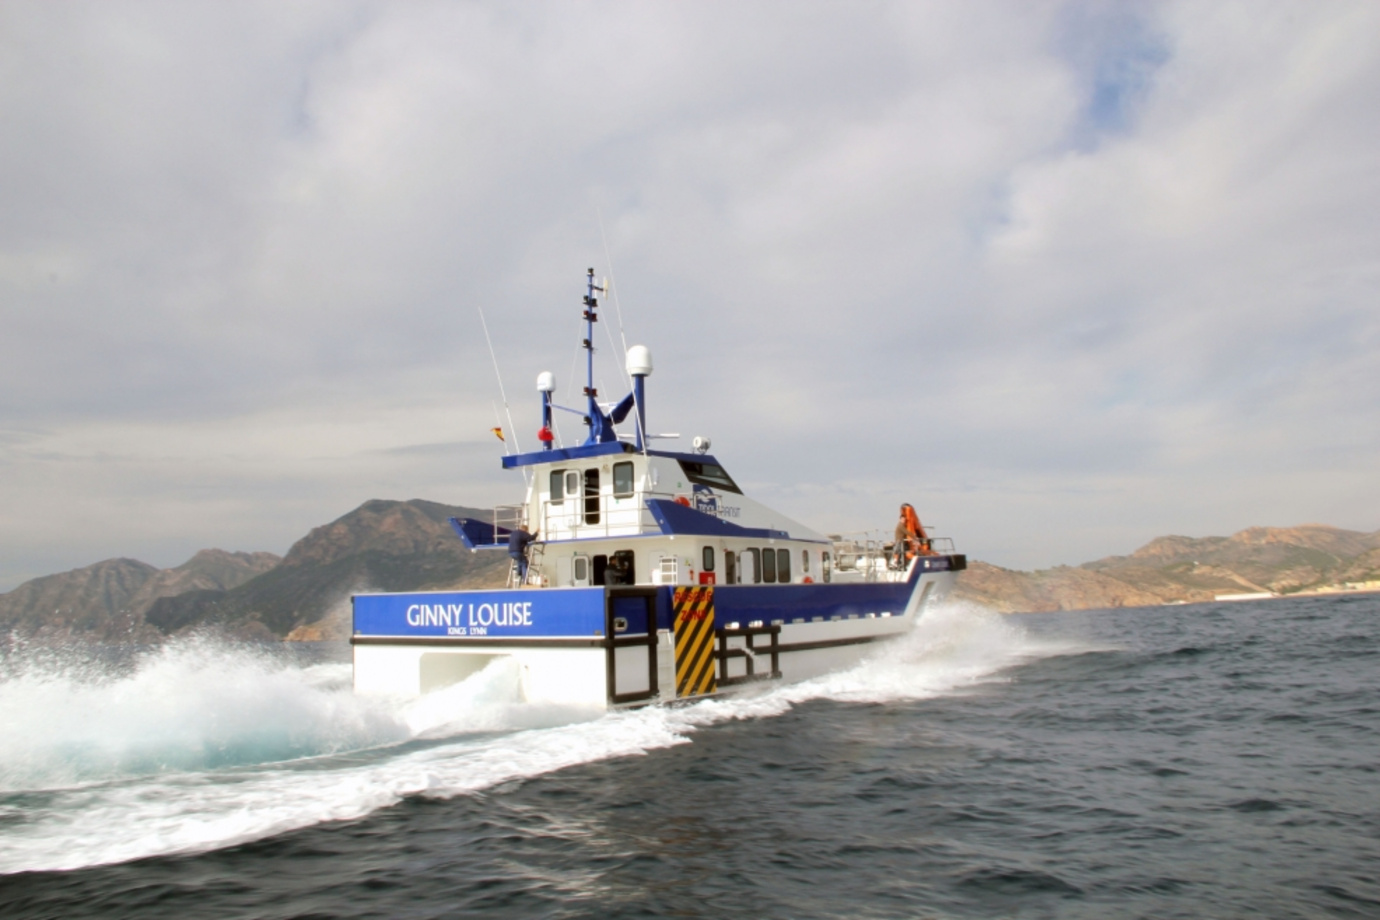 Skipper and crew careers at Tidal Transit